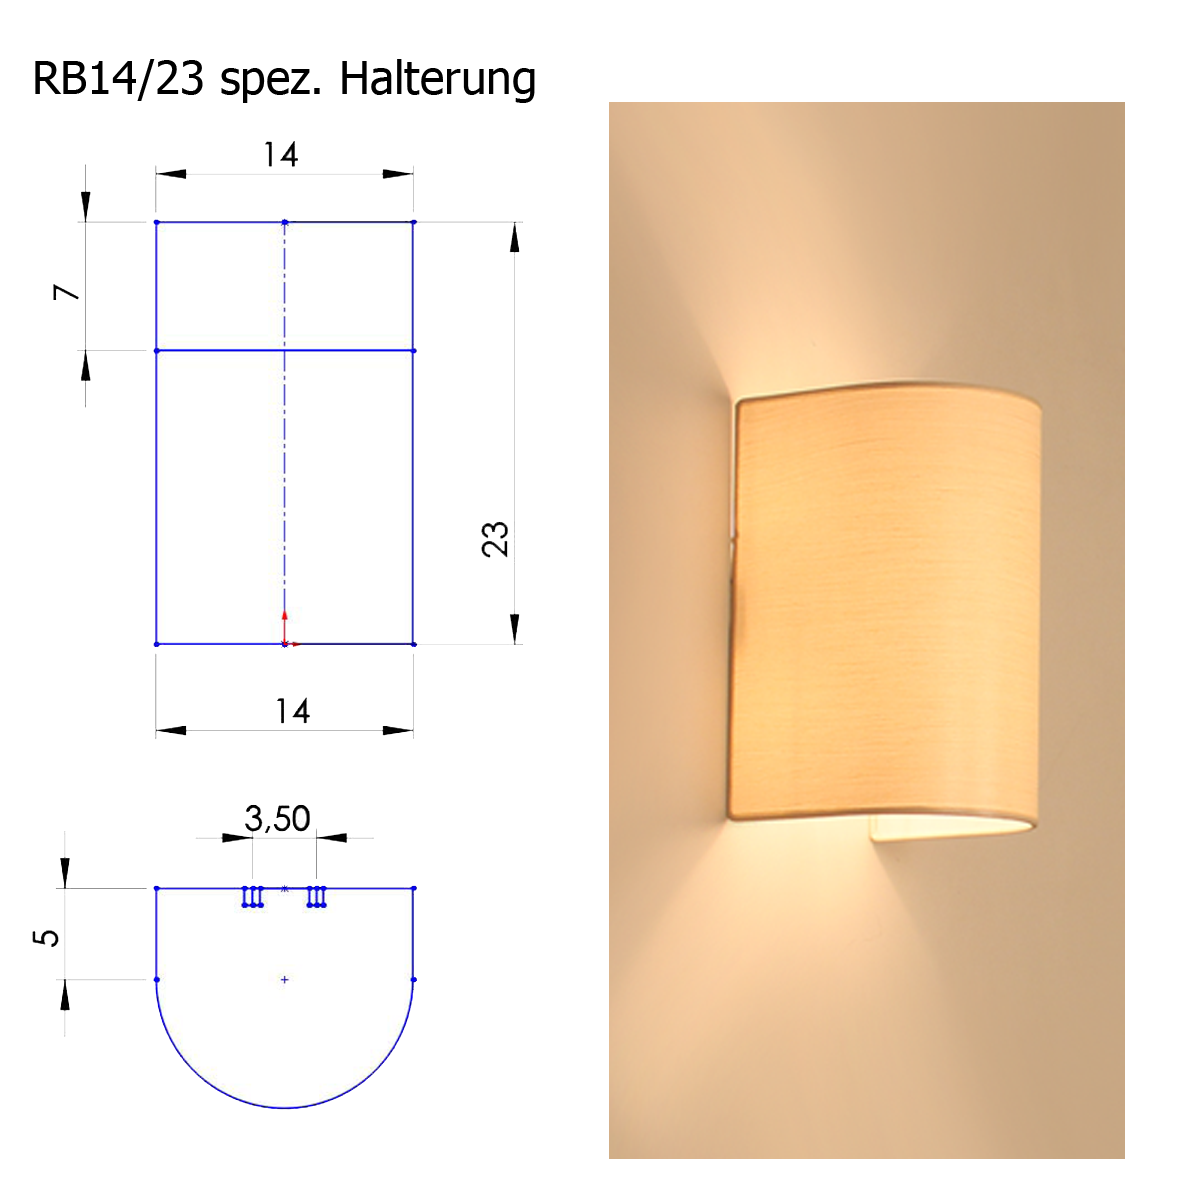 Lampenschirm Blende A, B=14cm, H=23cm Strichlack, spezial Halterung für Montur LI702,